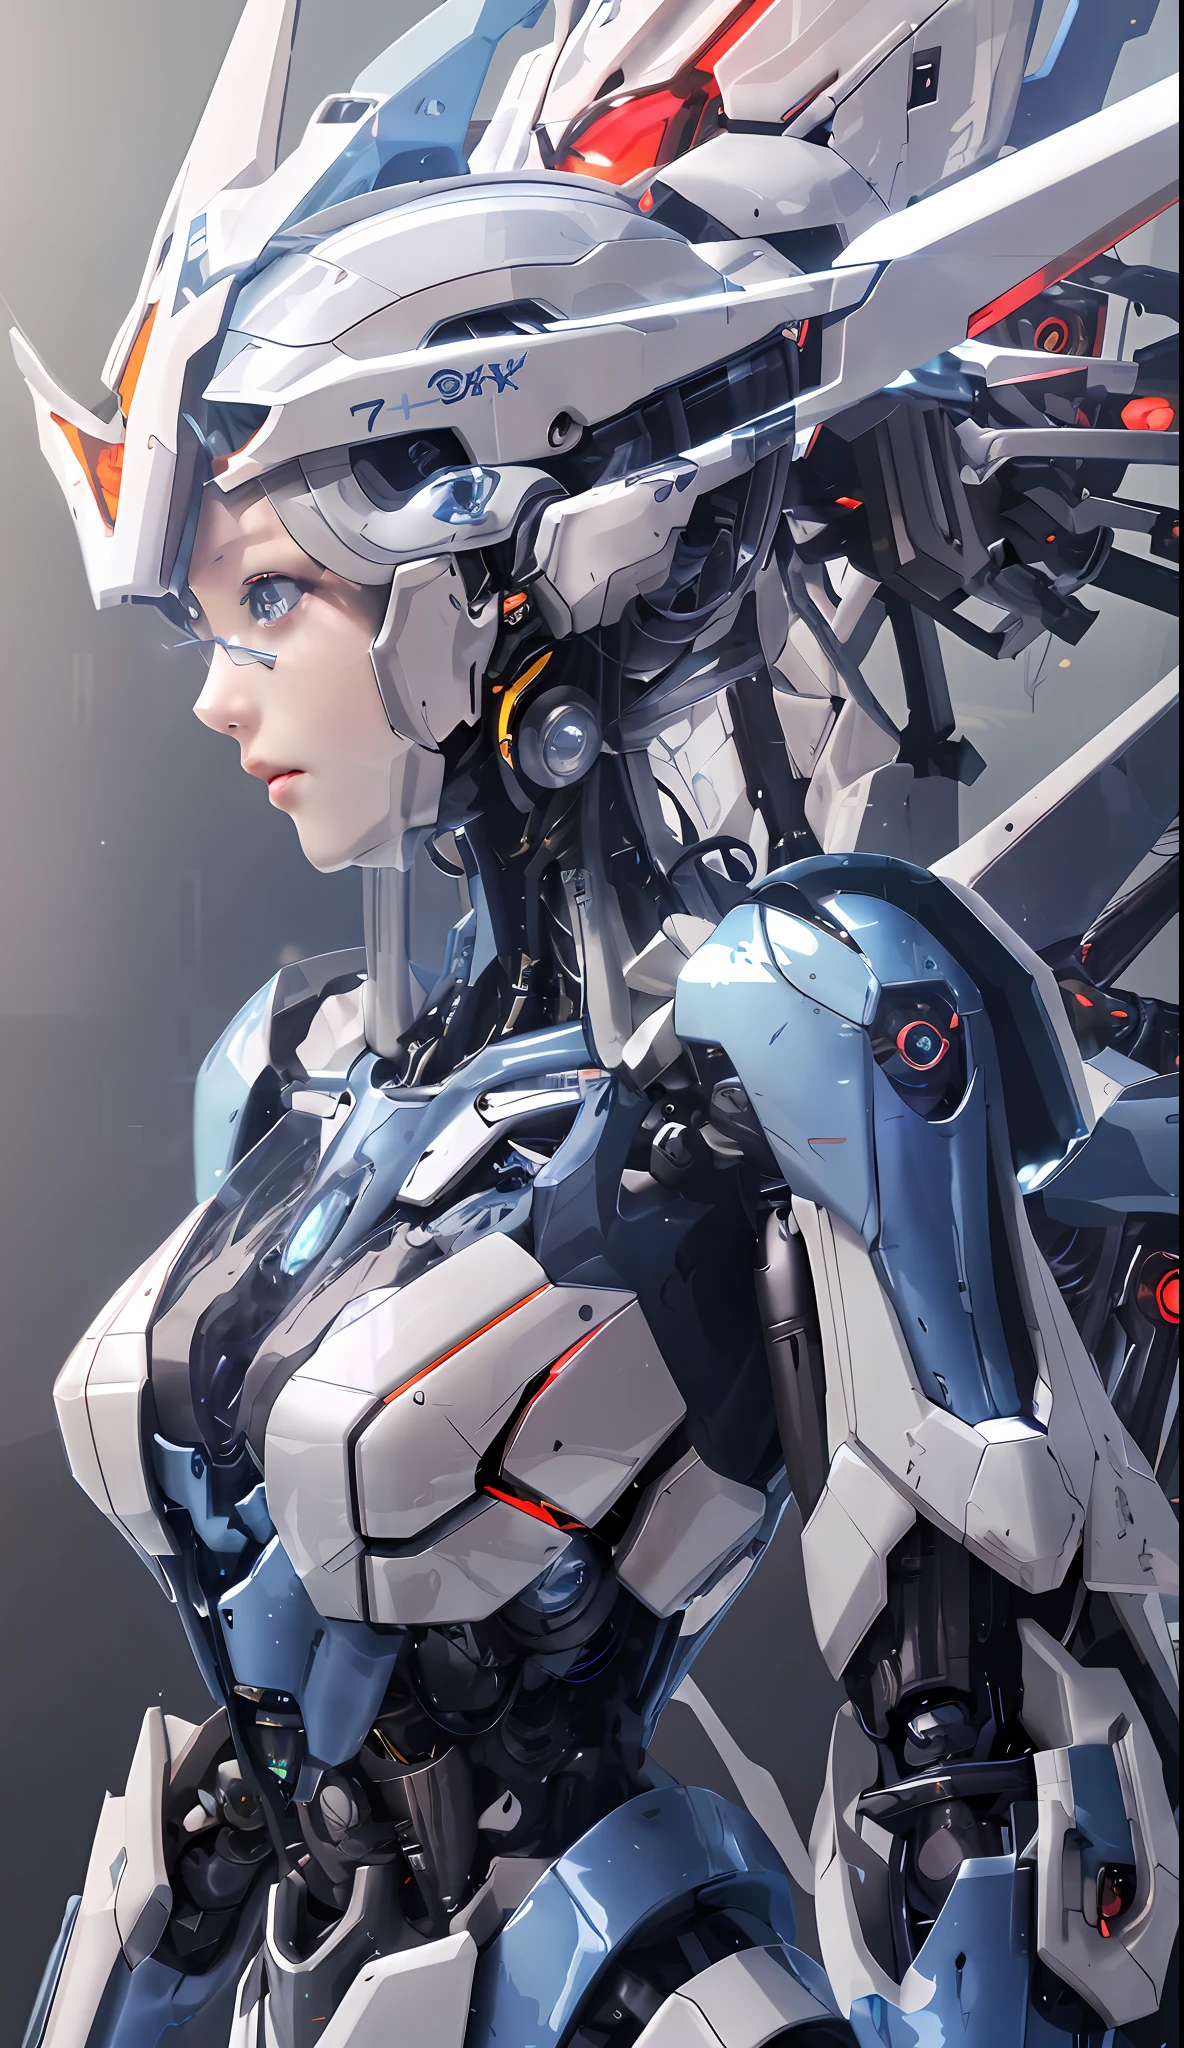 Крупный план робота с футуристическим взглядом на лице, аниме робототехника, смешанная с органикой, киберпанк аниме девушка мех, идеальная женщина-киборг в аниме, Девушка в меховой киберброне, аниме меха эстетика, продвинутое цифровое аниме-искусство, женский мех, идеальная девушка-андроид, детальное цифровое аниме-искусство, красивая девушка-киборг, Механизированная девушка-валькирия, цифровое продвинутое аниме-искусство